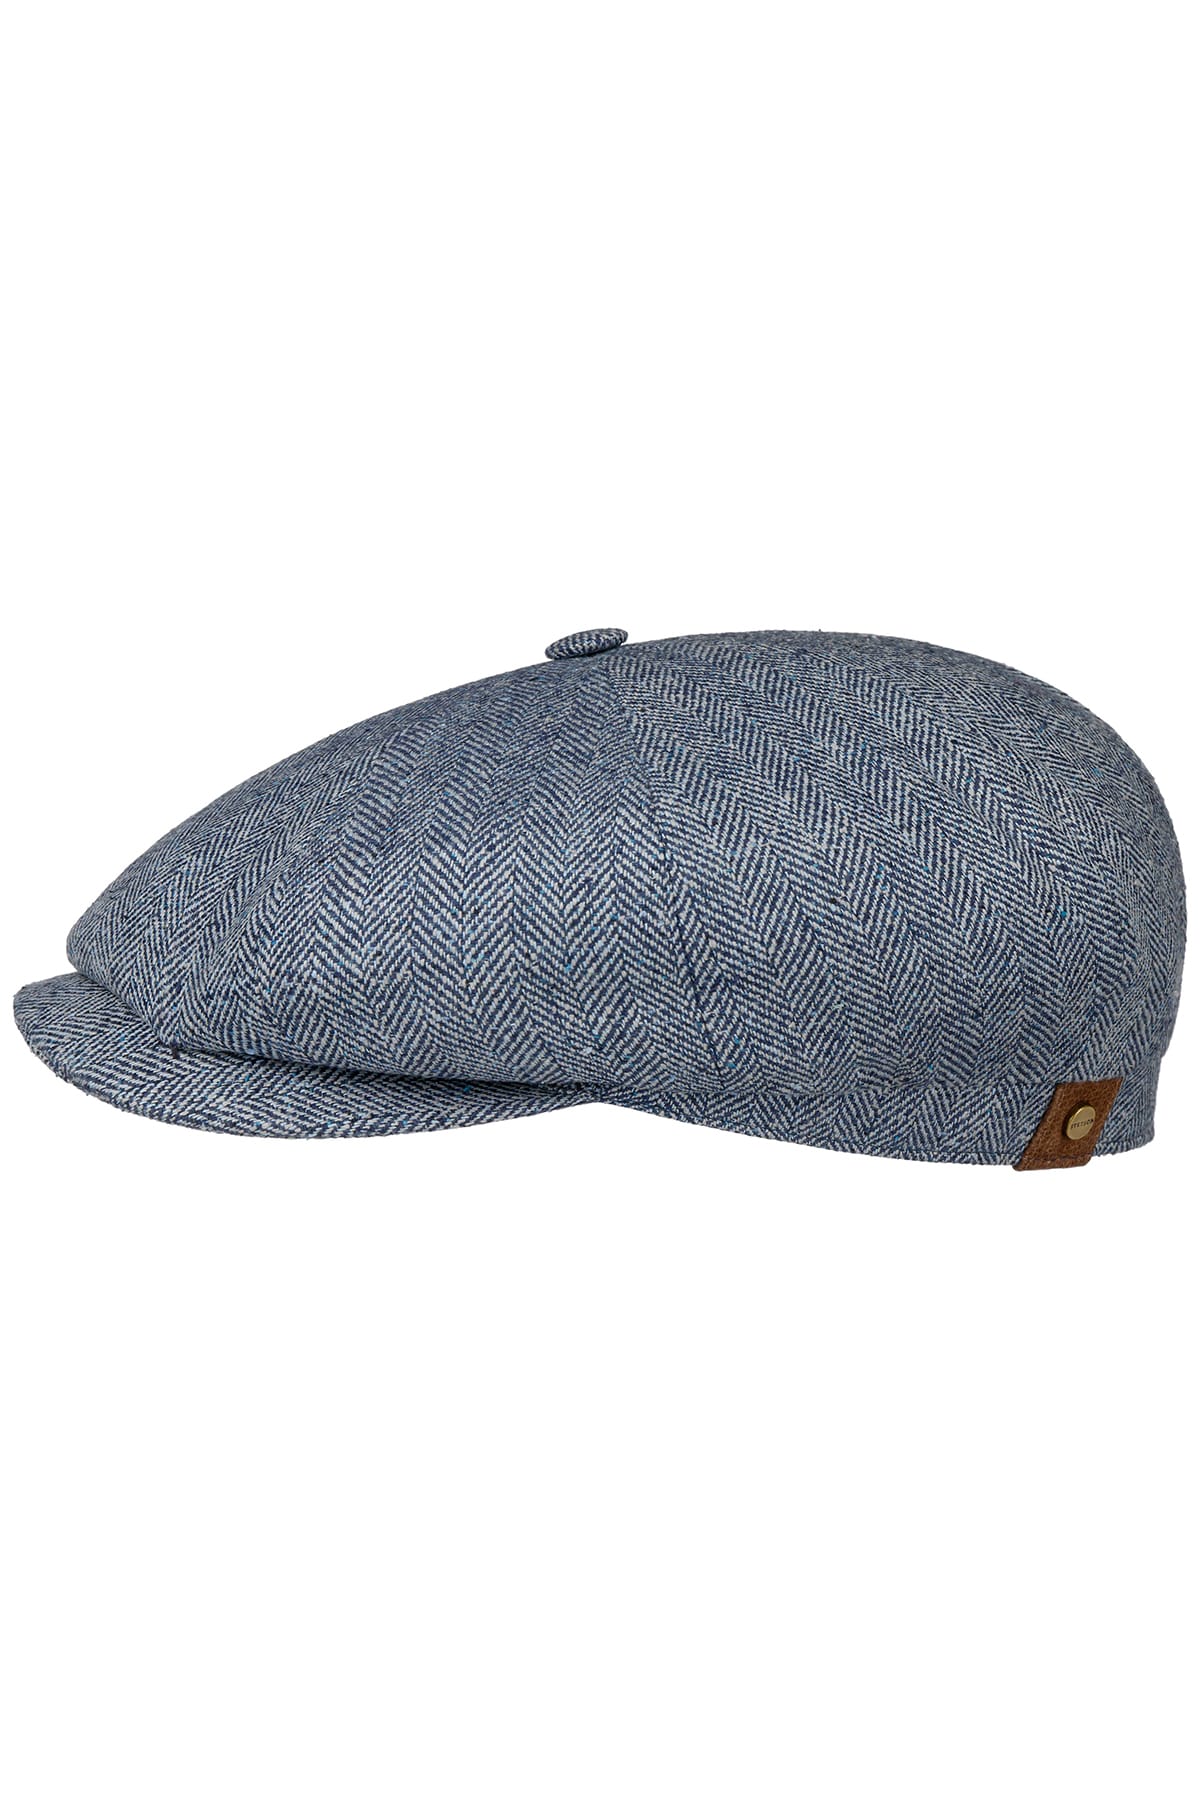 Mütze Hatteras Silk Blau Mütze Stetson 